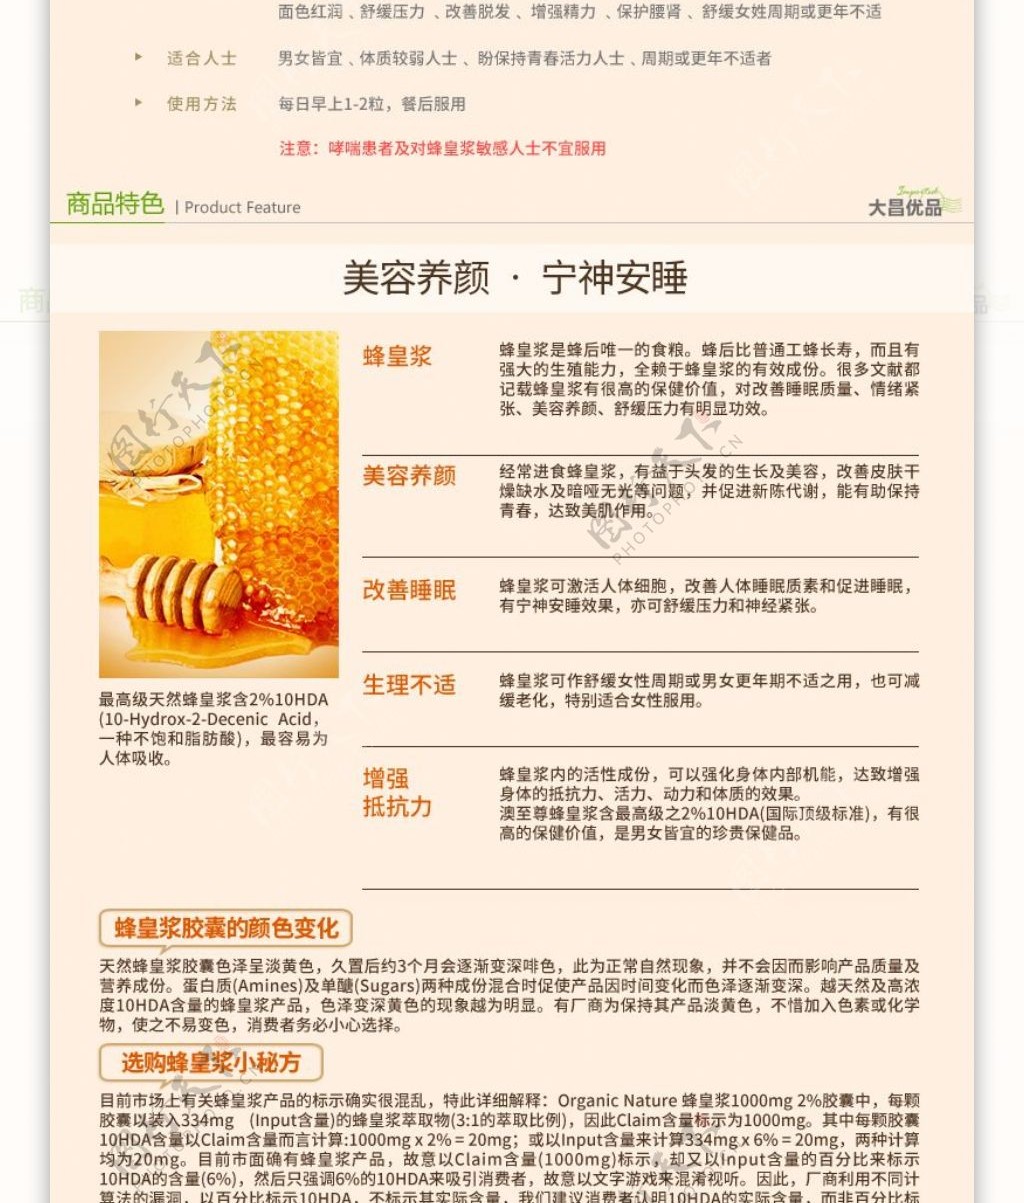 香港进口蜂皇浆详情页设计